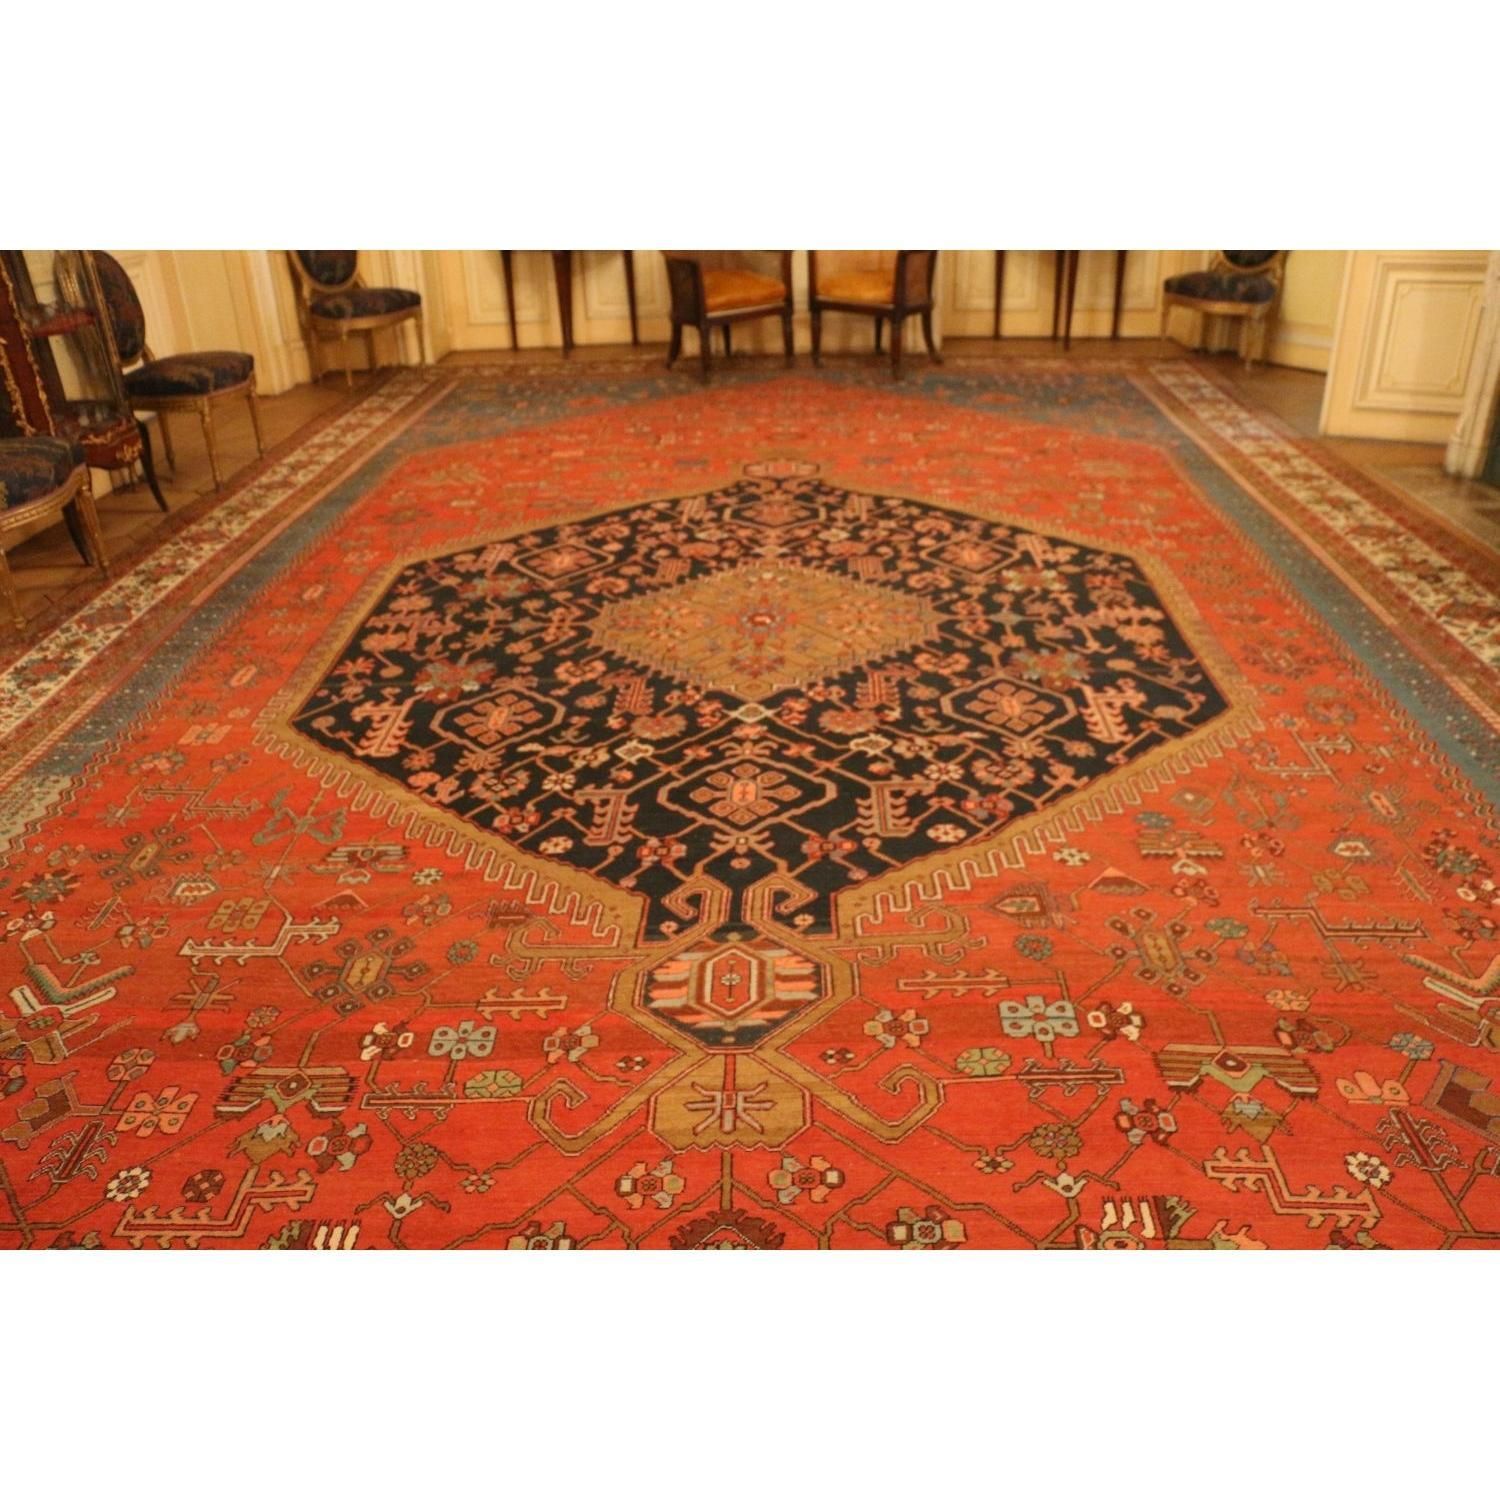 IMPORTANT TAPIS D'ORIENT EN LAINE Important oriental wool carpet.

Brick and nav&hellip;